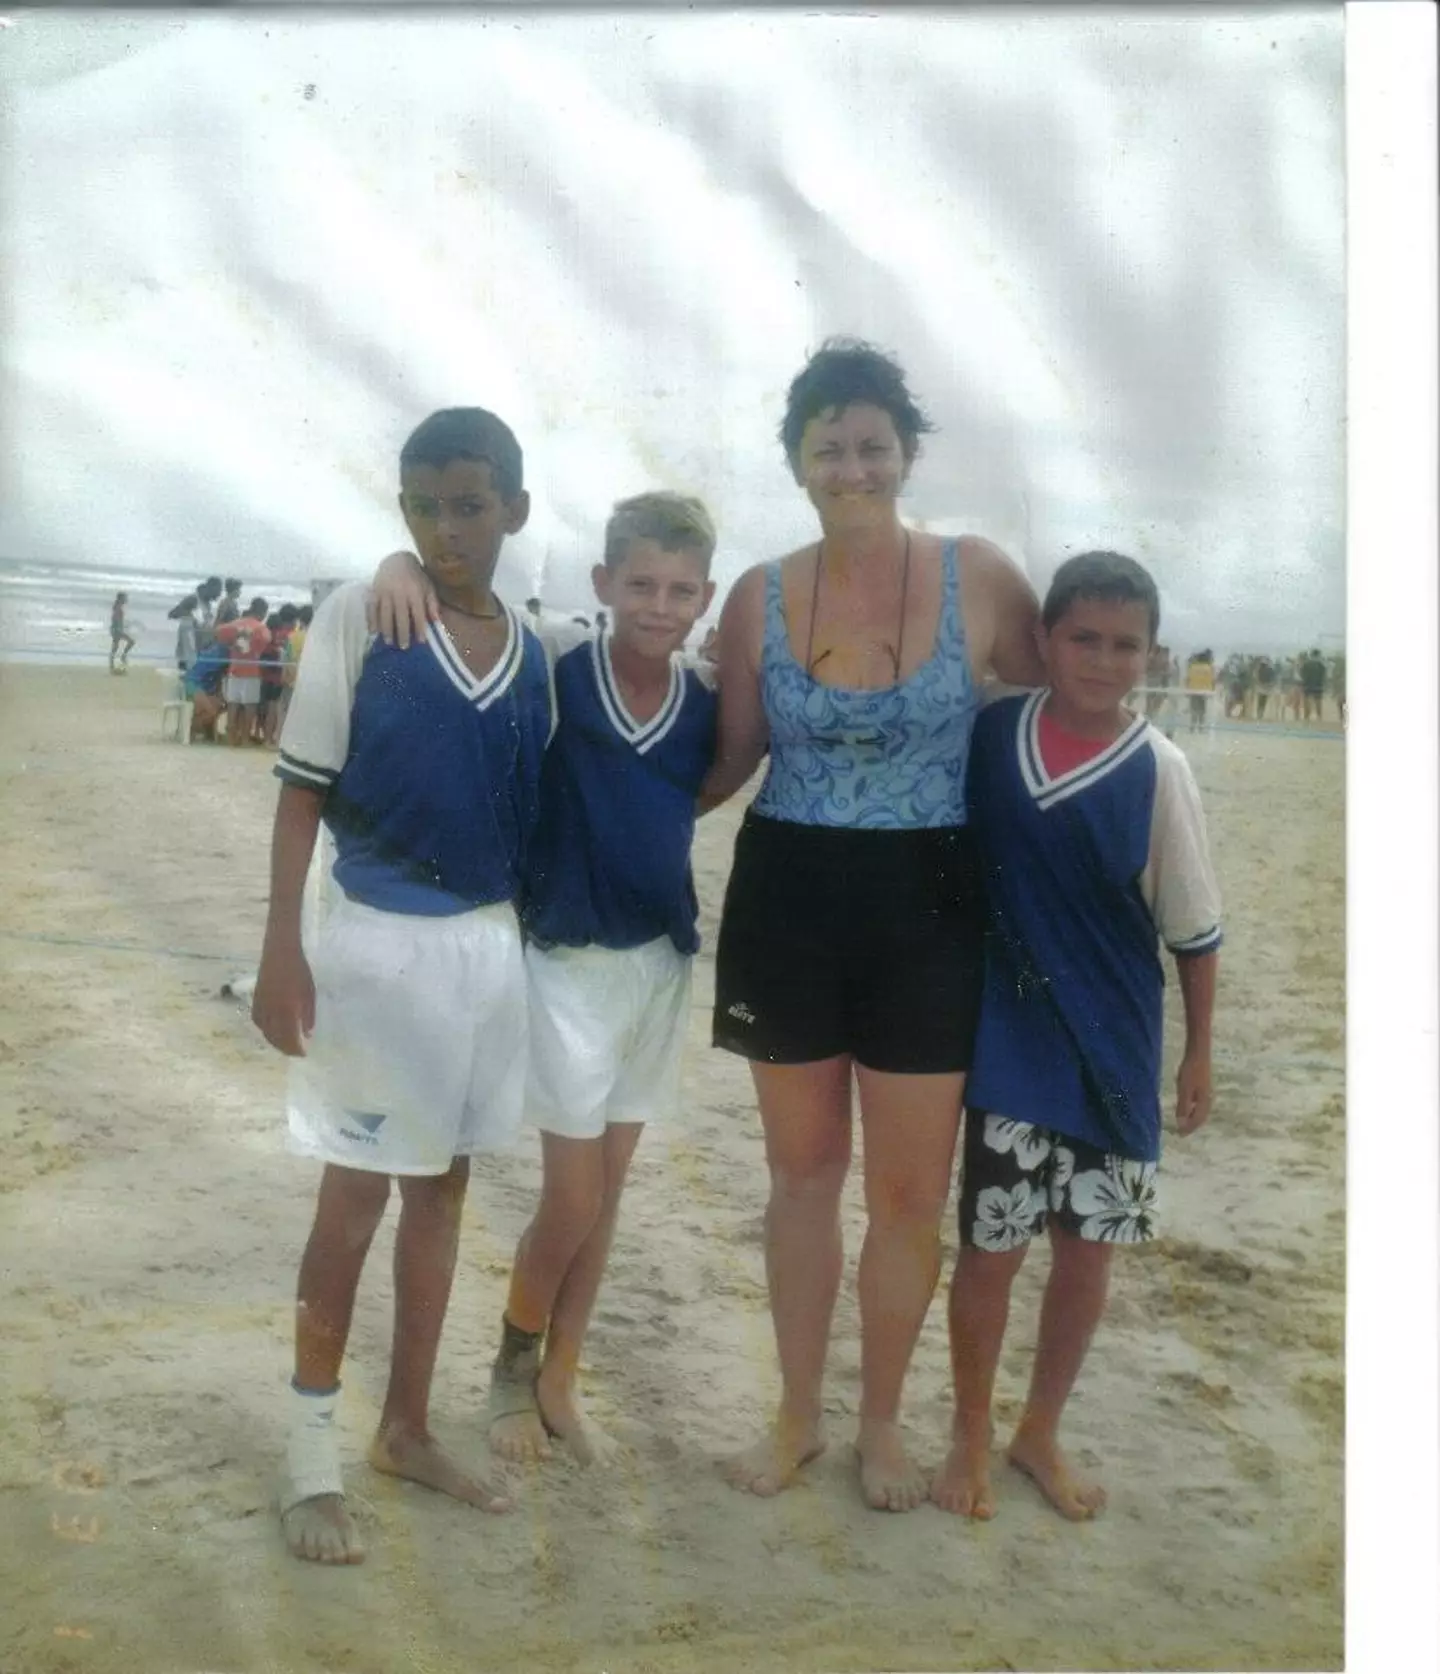 Jorginho, second left, with his mother on the beach. Image credit: Facebook/Jorginho Frello Official